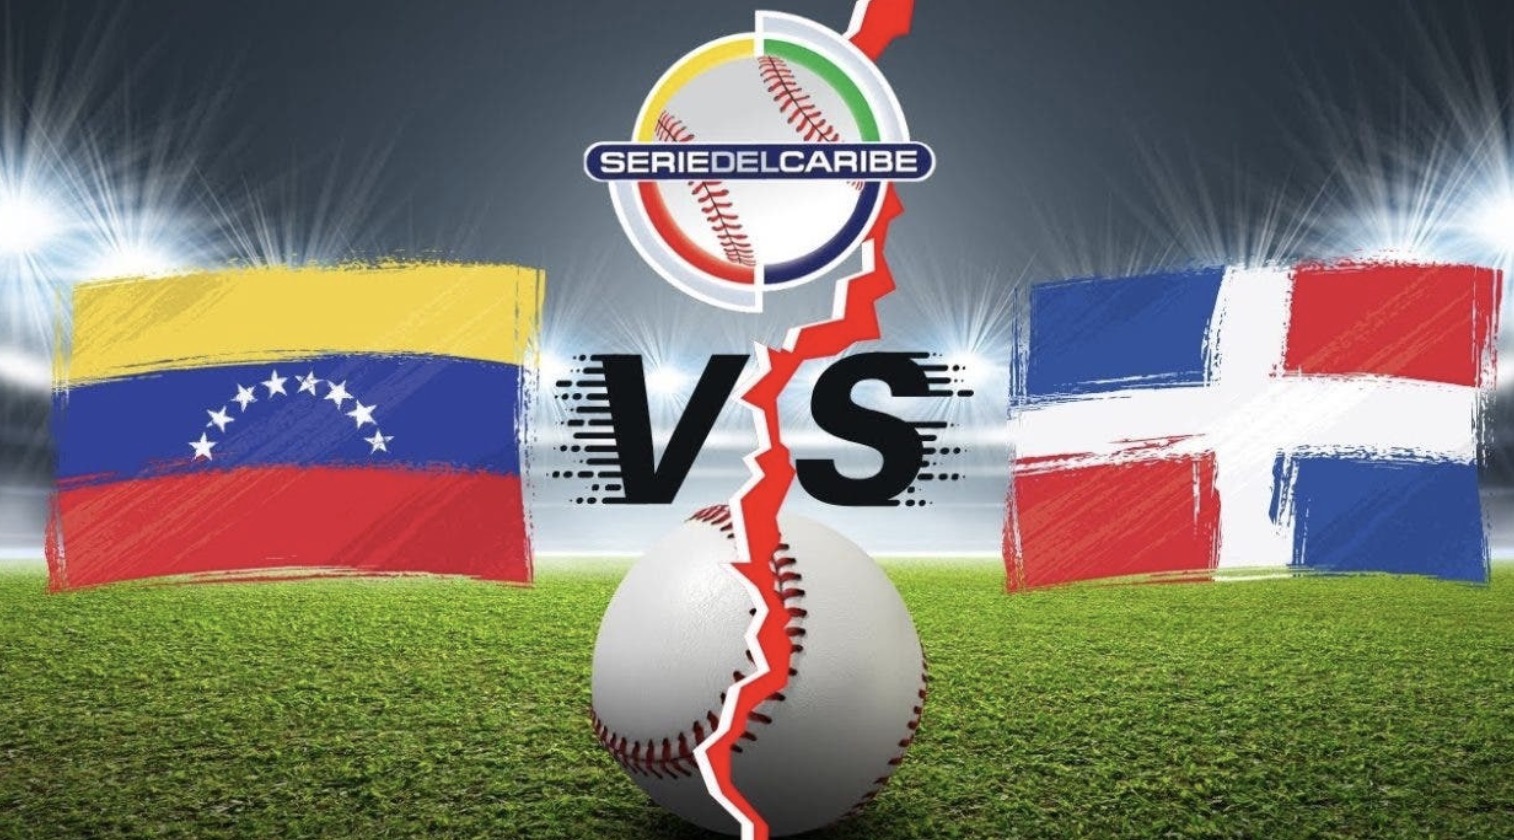 Venezuela y República Dominicana se baten a duelo por la Serie del